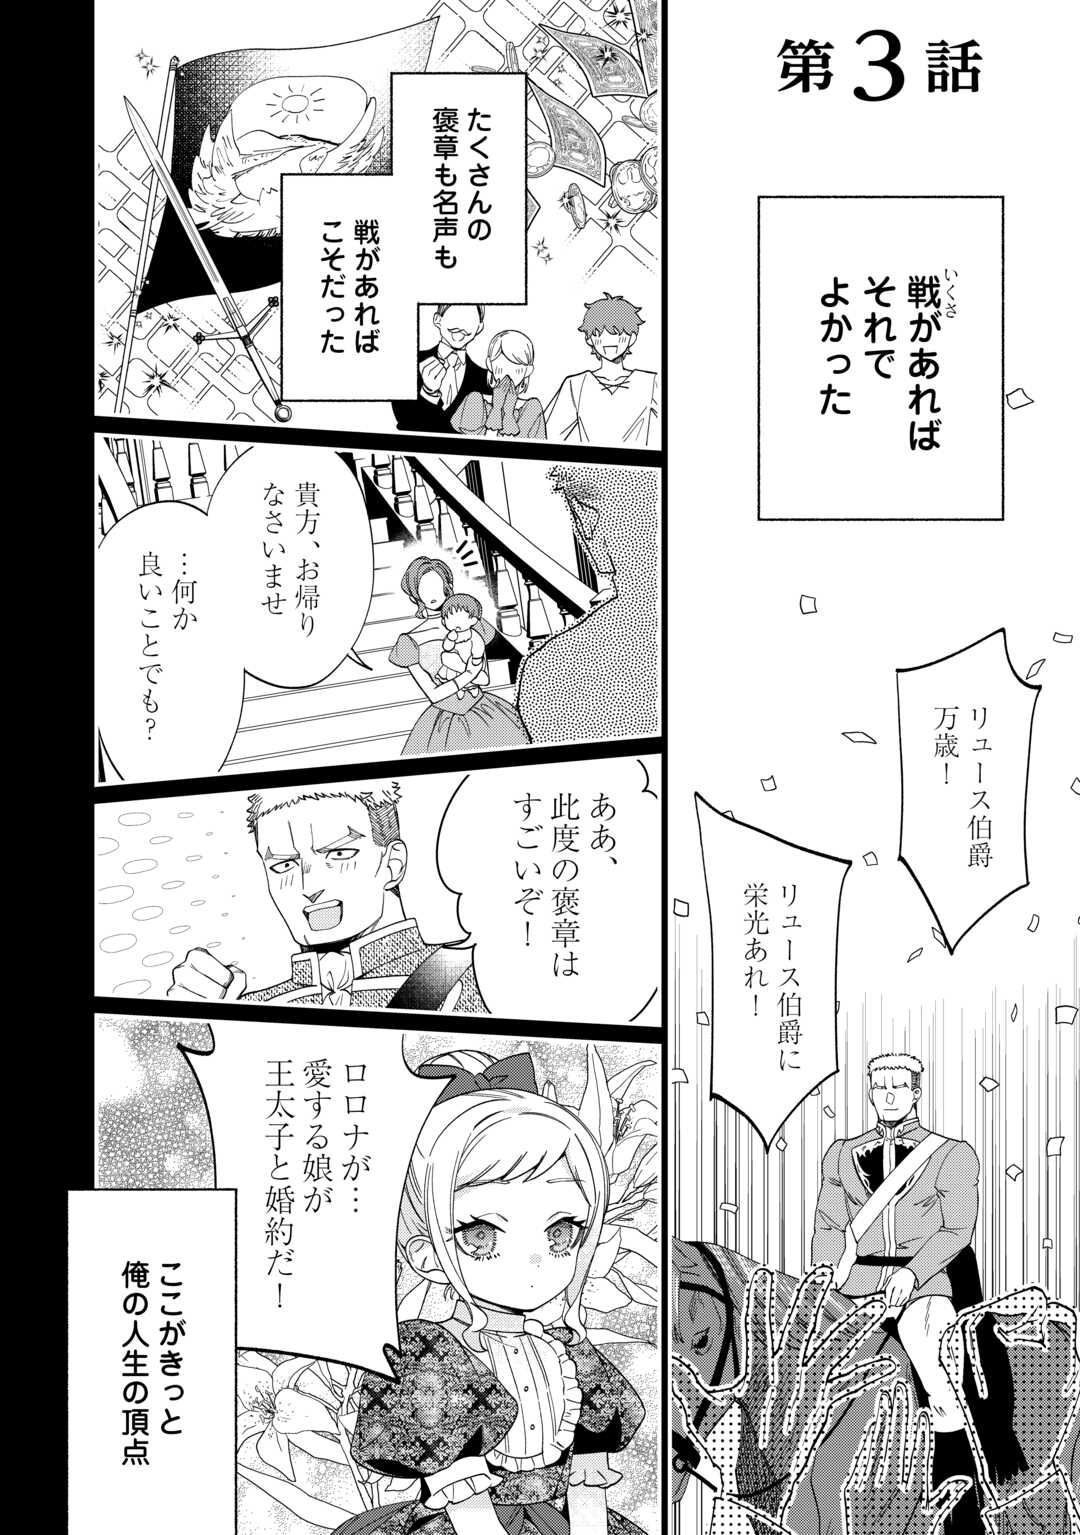 Watashi ga Shinde Manzoku desu ka? - Chapter 3 - Page 1